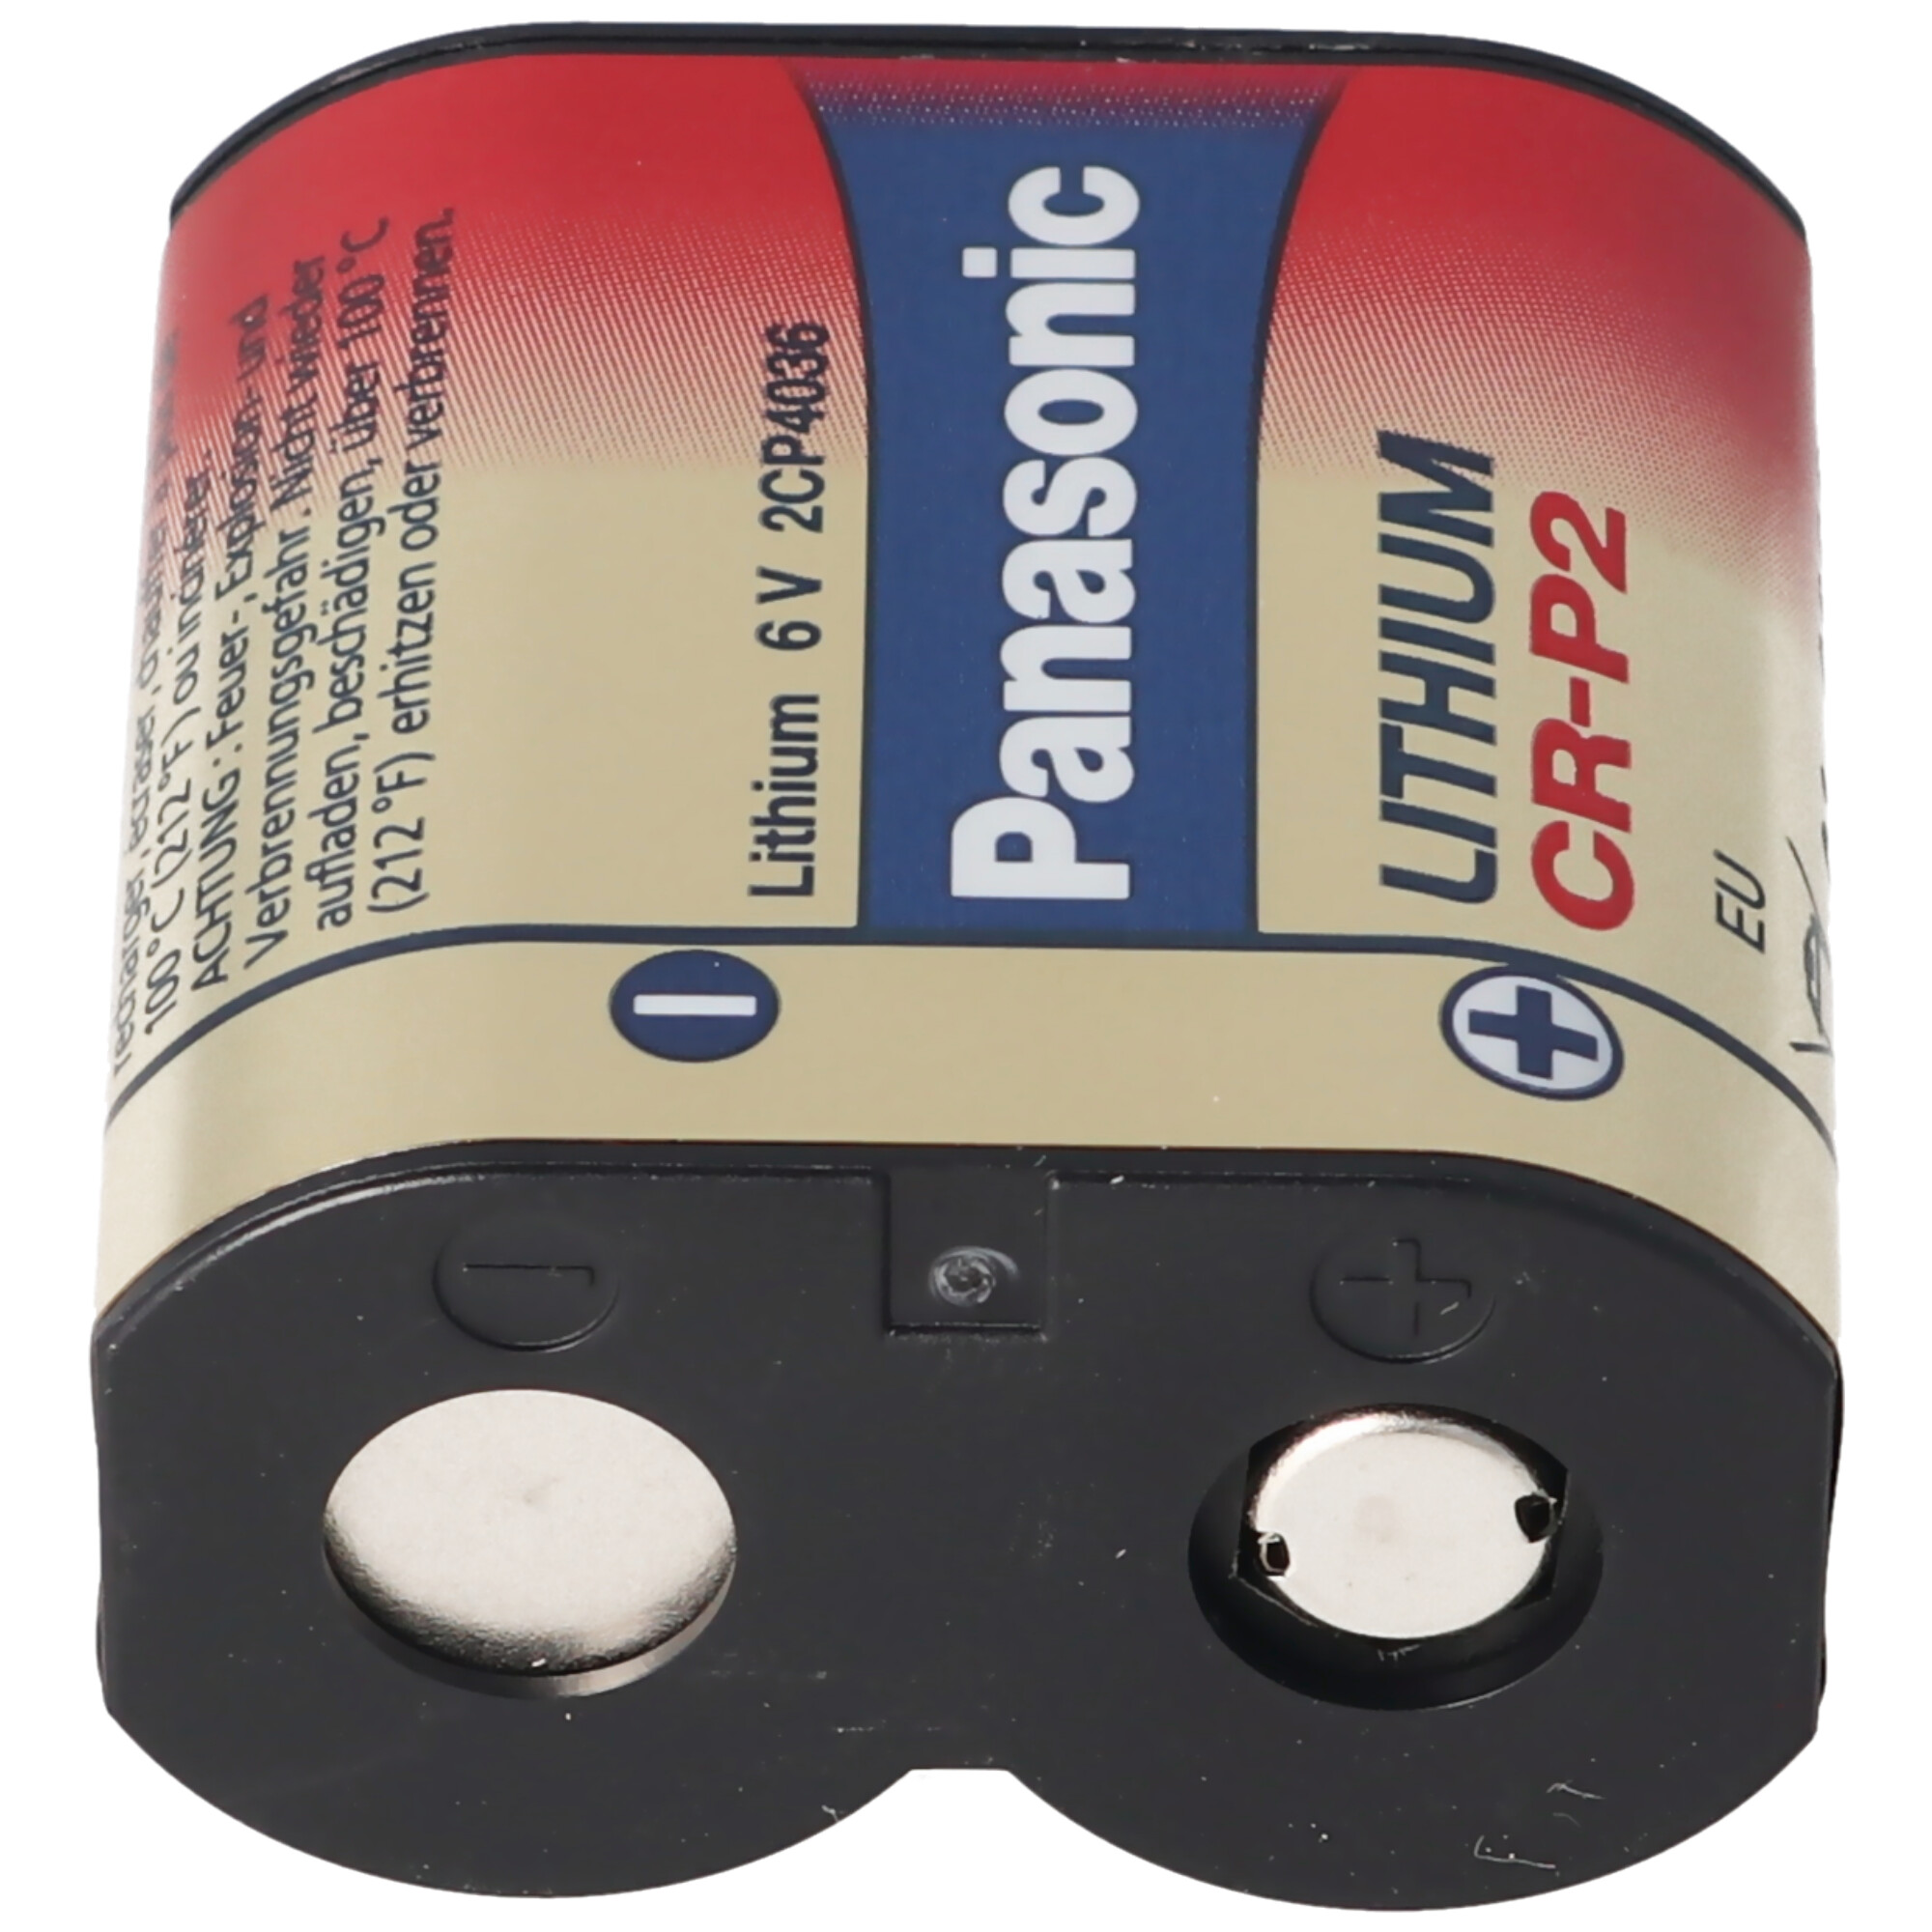 Panasonic CR-P2 Photo Batterie CR-P2P, CRP2P, CR-P2PEP, 6Volt